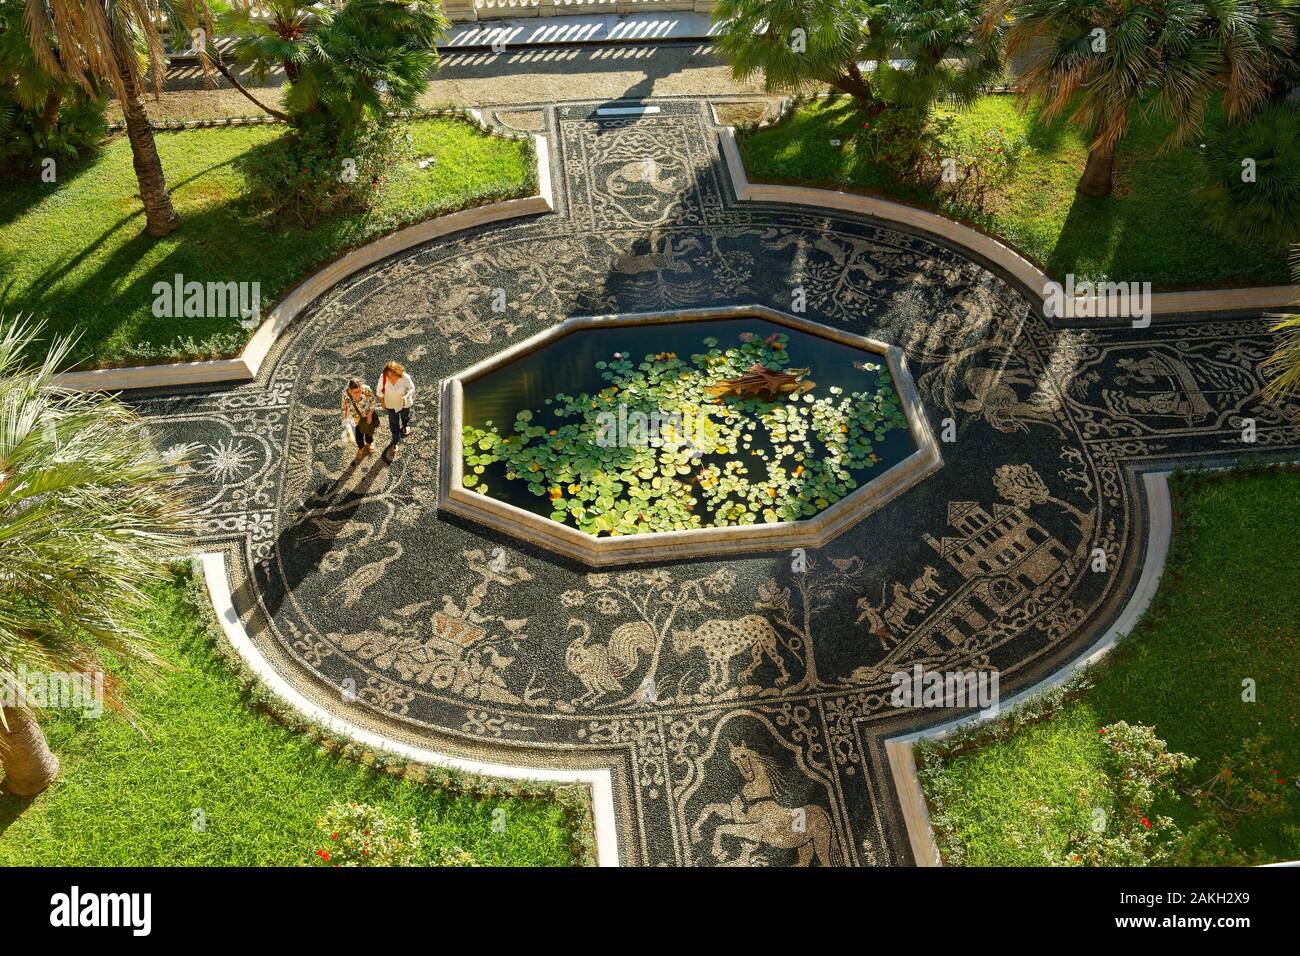 Italien, Ligurien, Genua, Museo di Palazzo Reale (Königspalast), die Gärten, das Becken in der Mitte von einem Mosaik aus Kieselsteinen Stockfoto